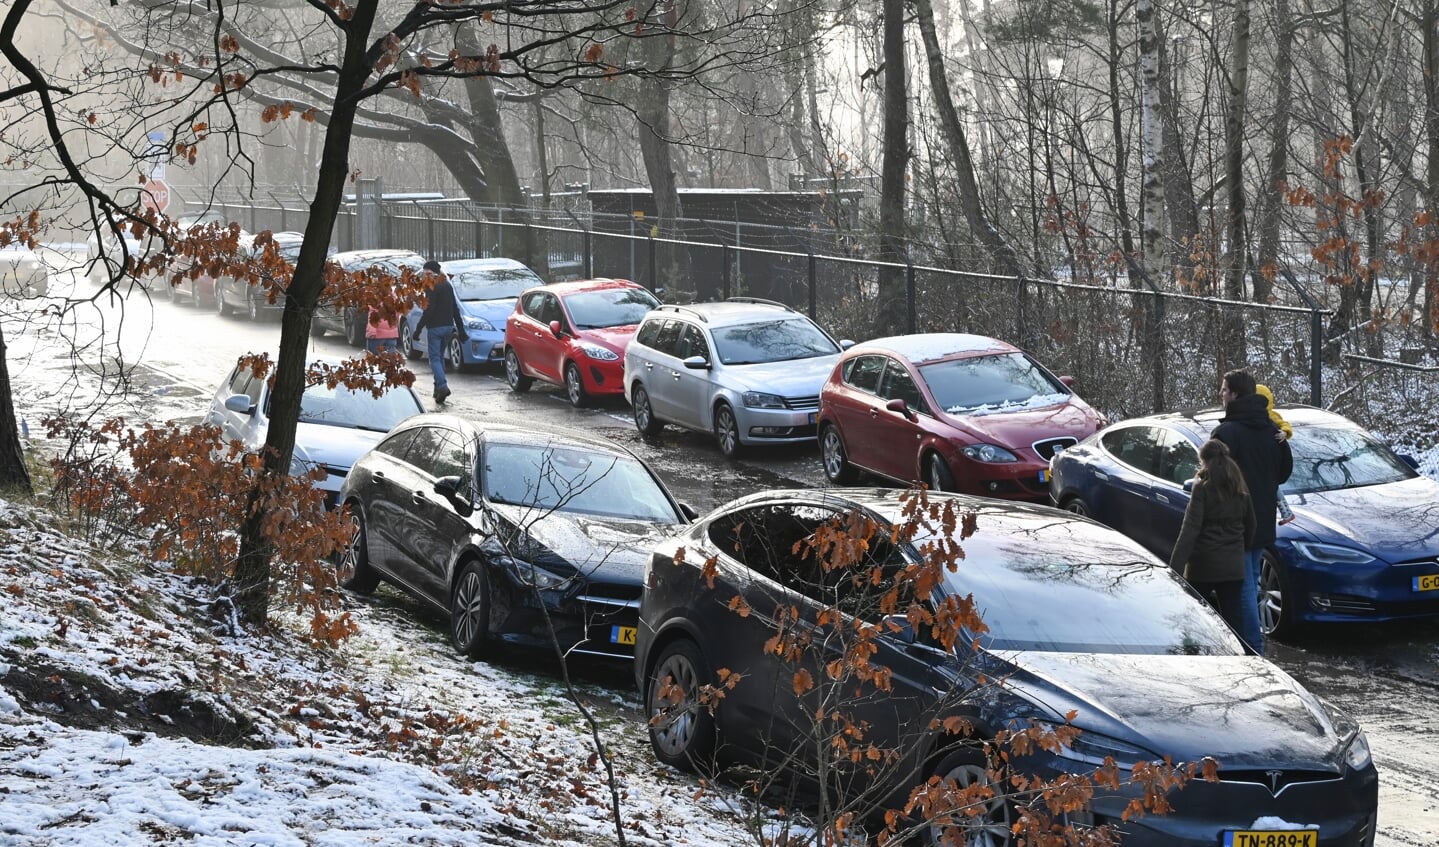 Metde door de sneeuw zetten in het weekeinde veel mensen koers naar de bossen, zoals hier op De Paltz.